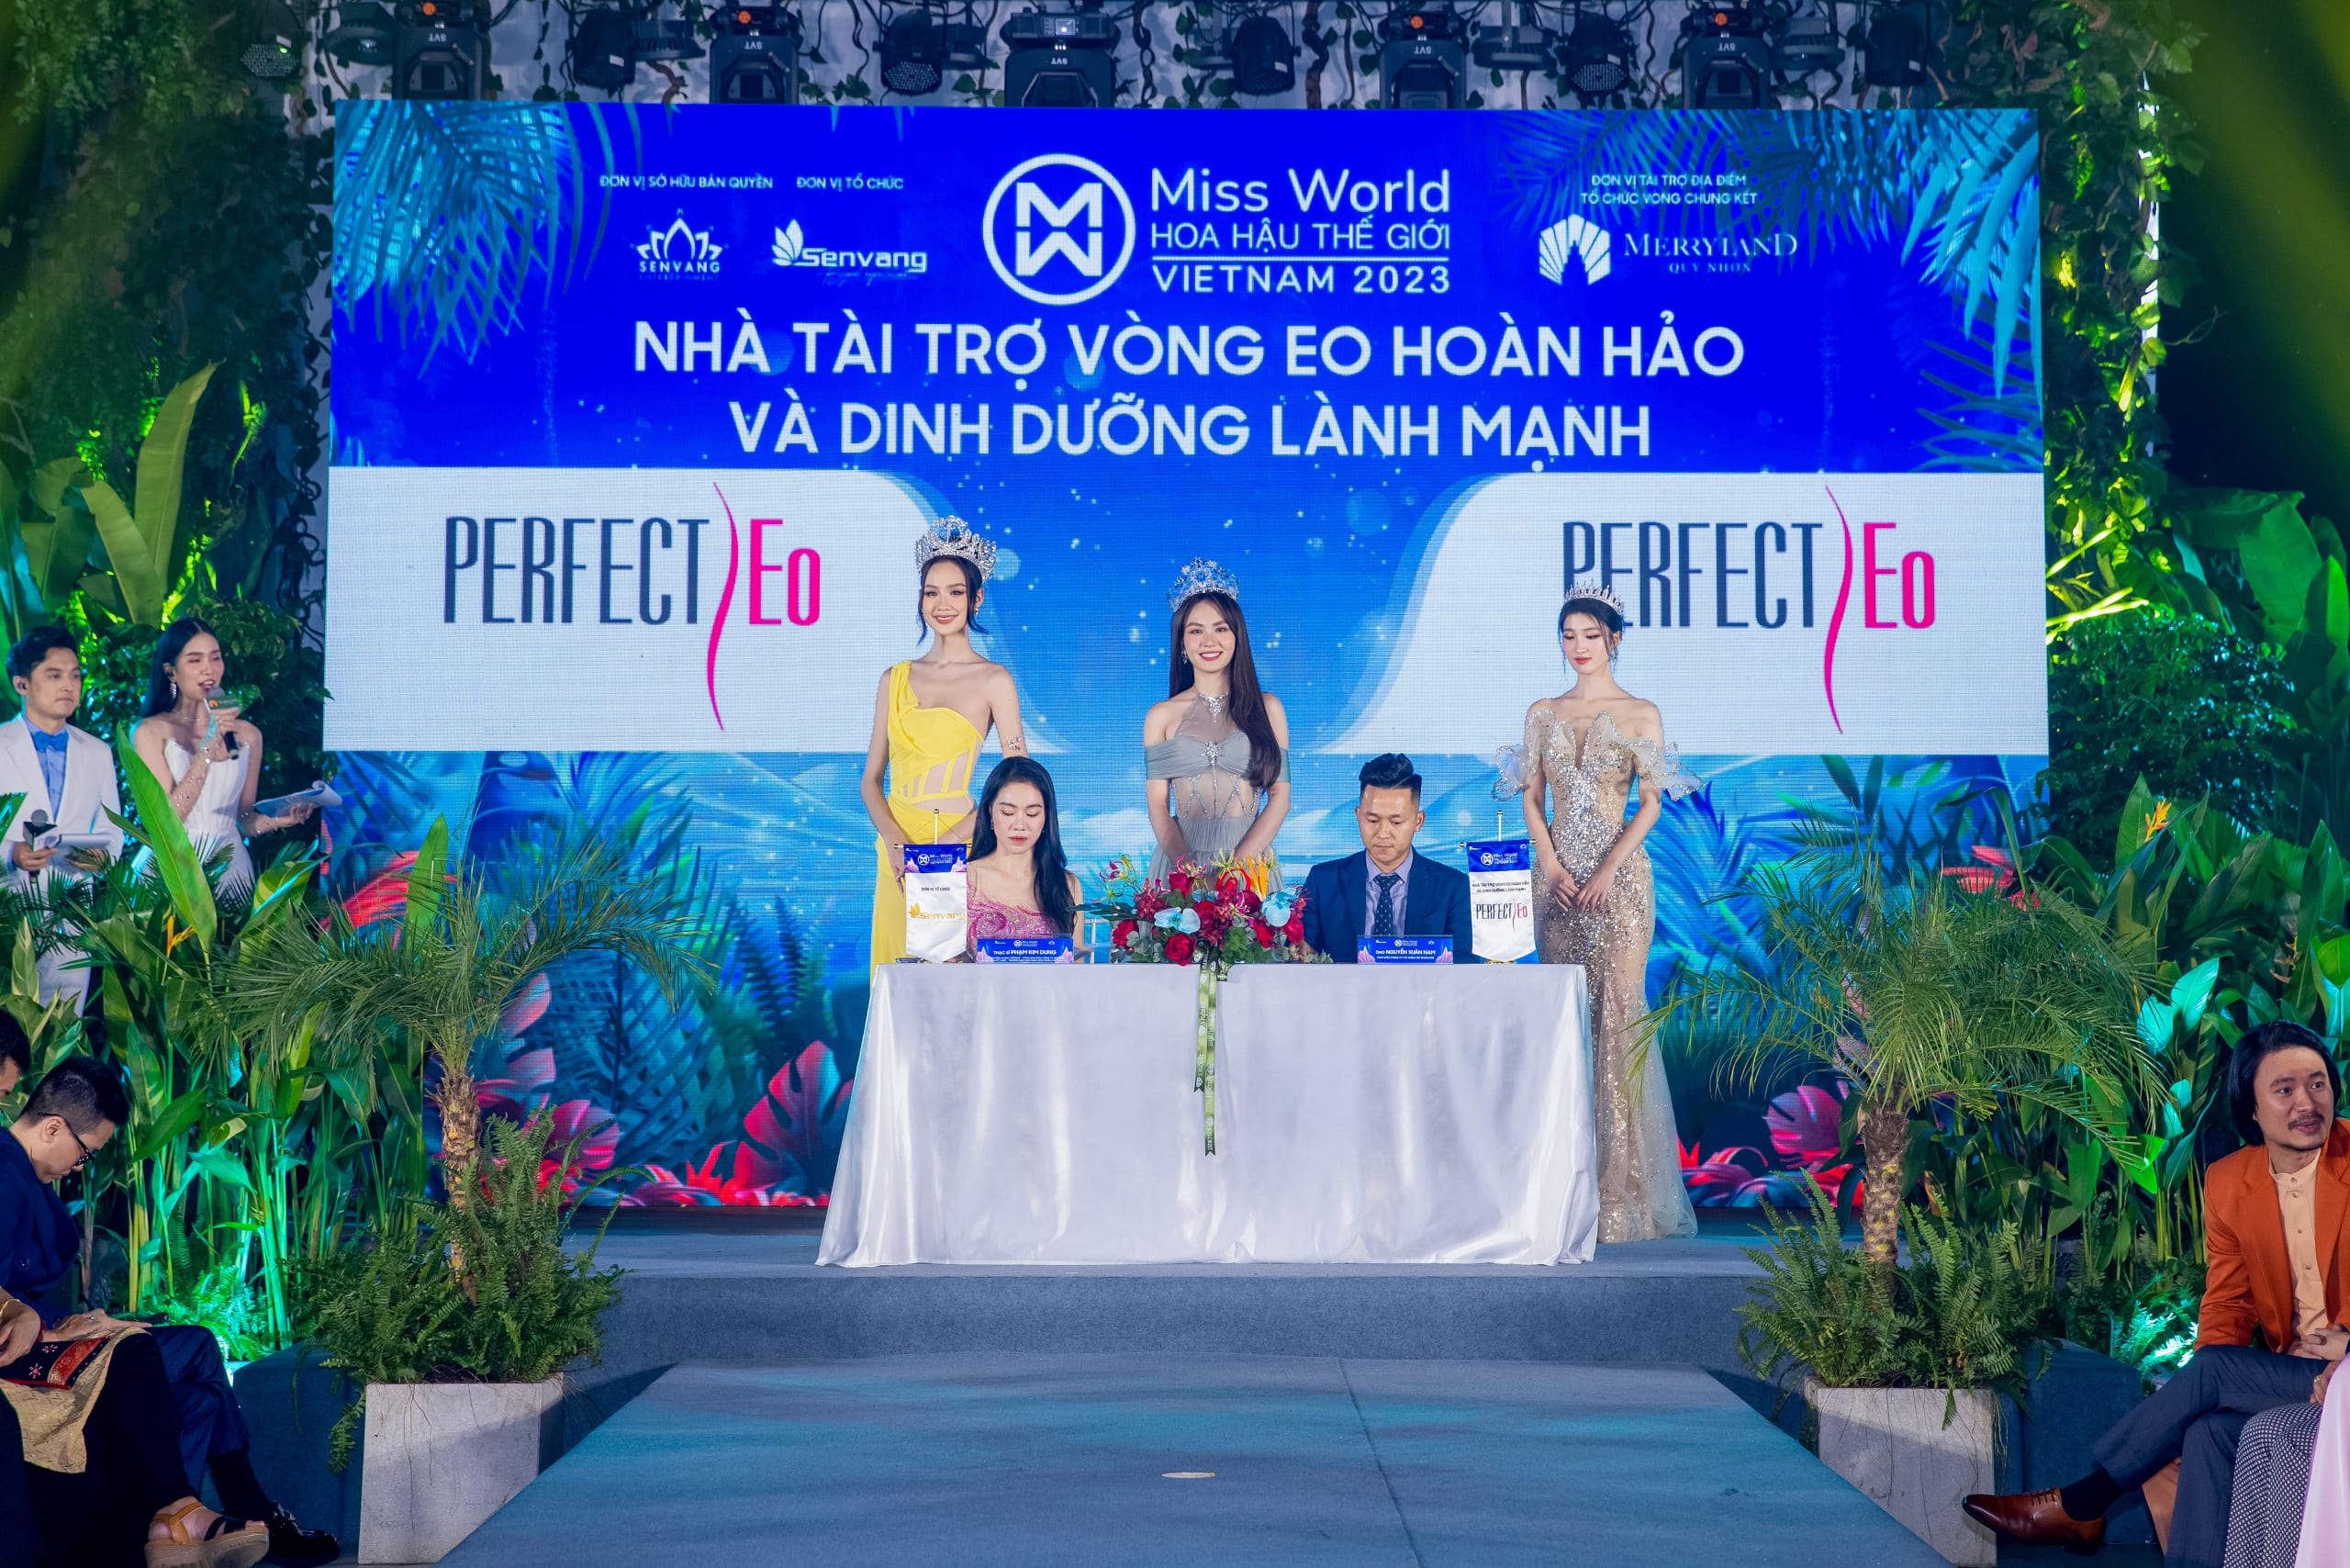 Perfect Eo cổ vũ tinh thần Miss World Vietnam 2023 trước thềm chung kết